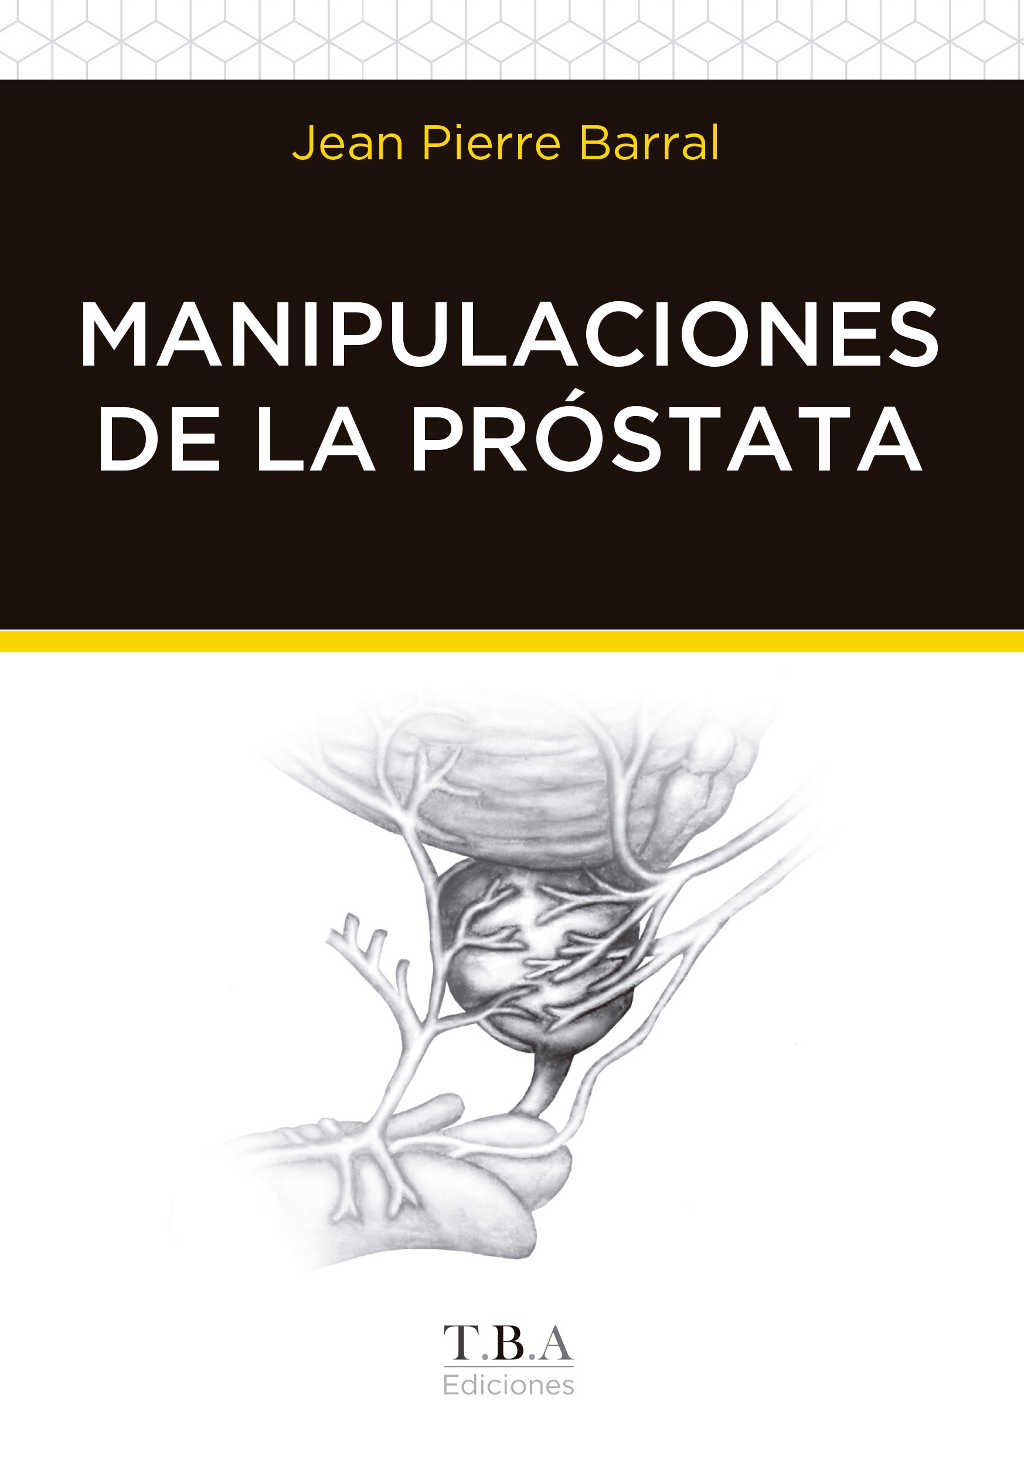 Manipulaciones de la próstata